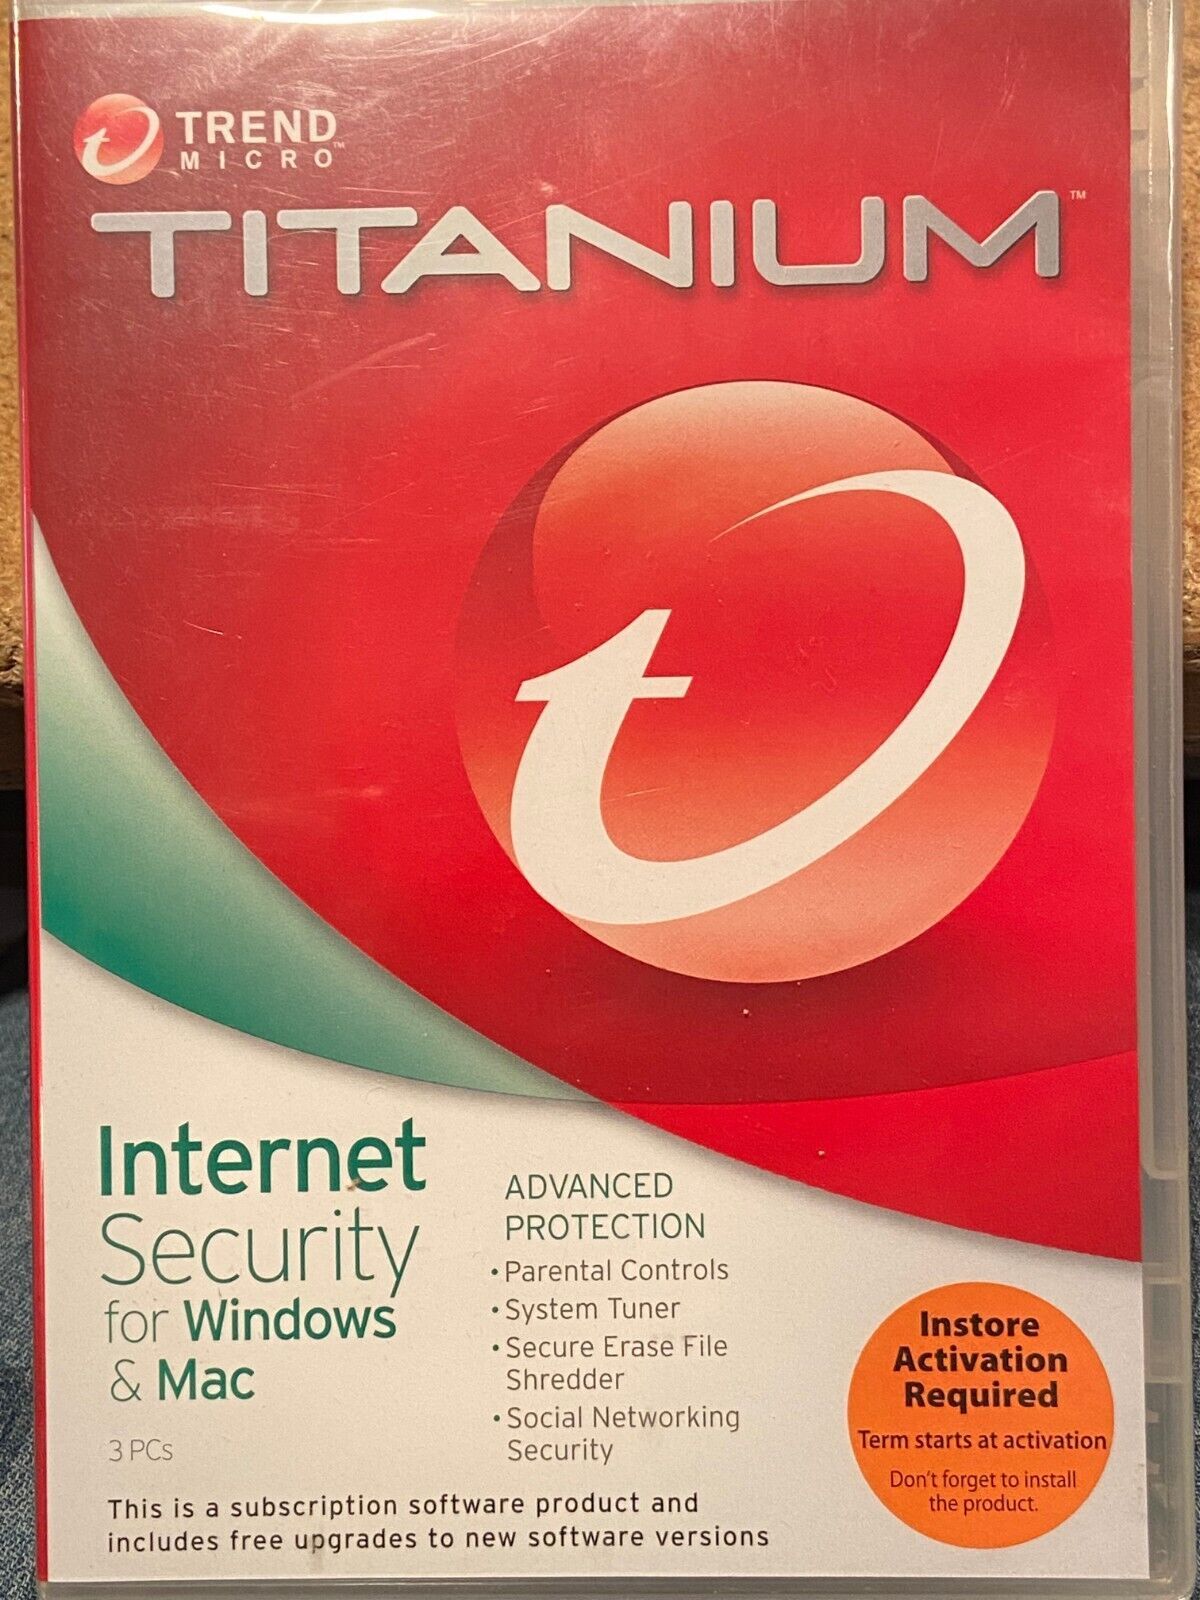 Titanium Internet Security Antivius 2012 for Windows & Mac *NEW* aaa1 - $14.99